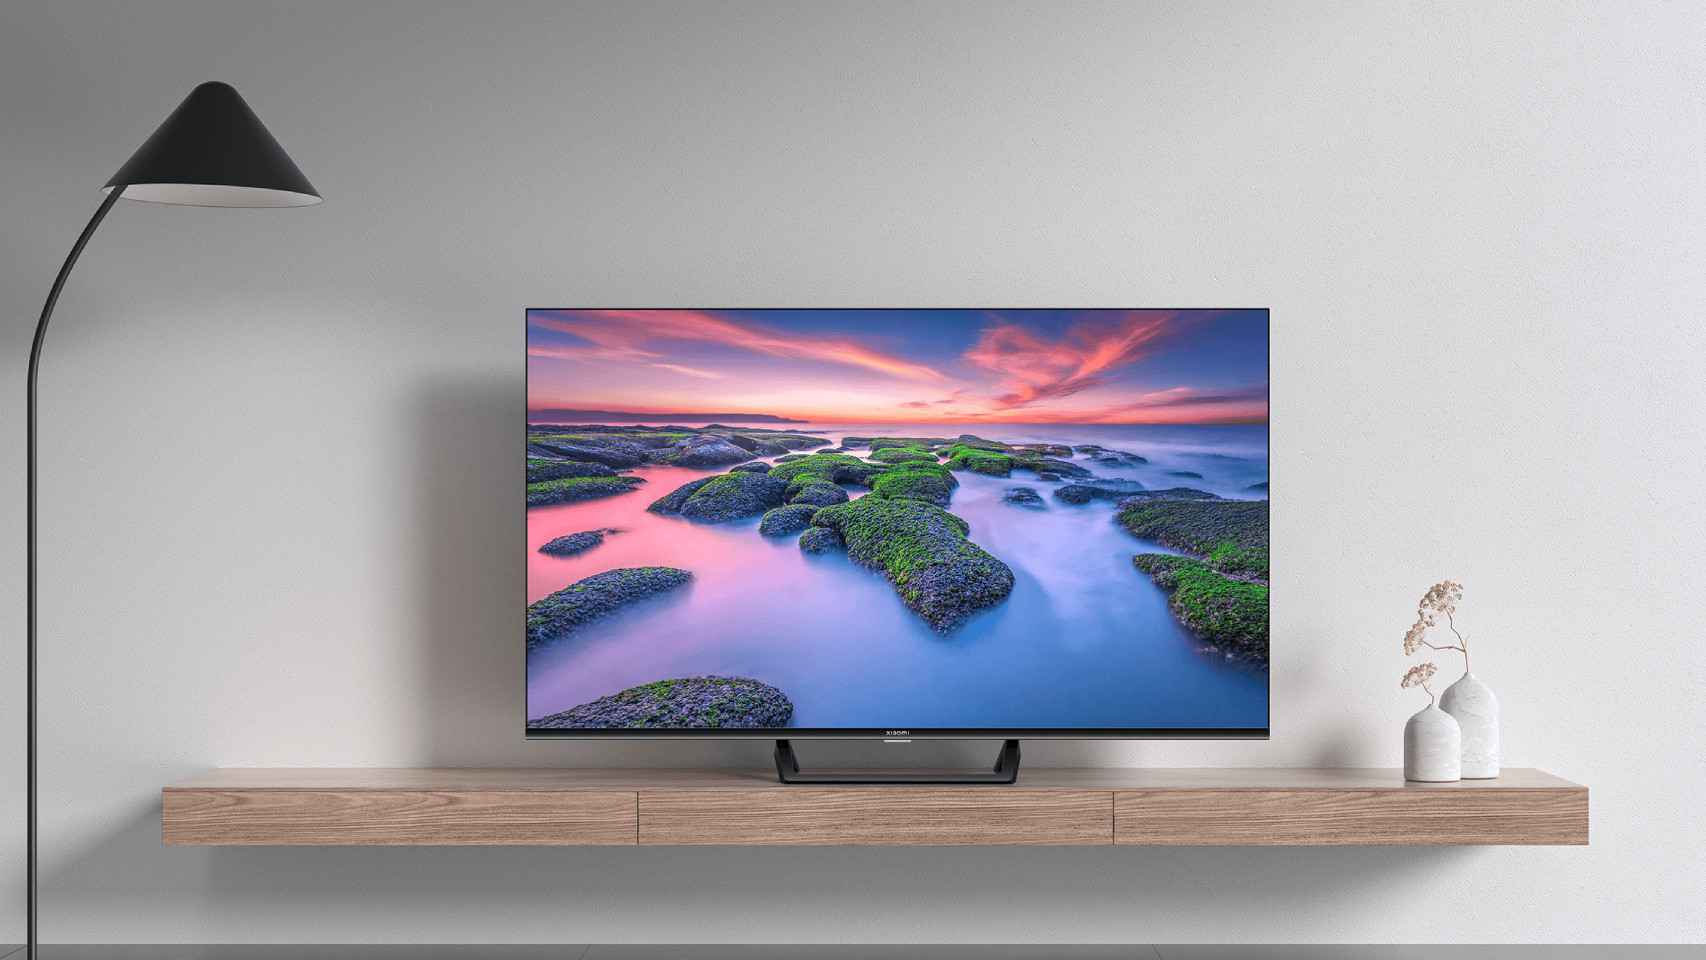 Accesorios Smart TV - Haz tu TV más inteligente